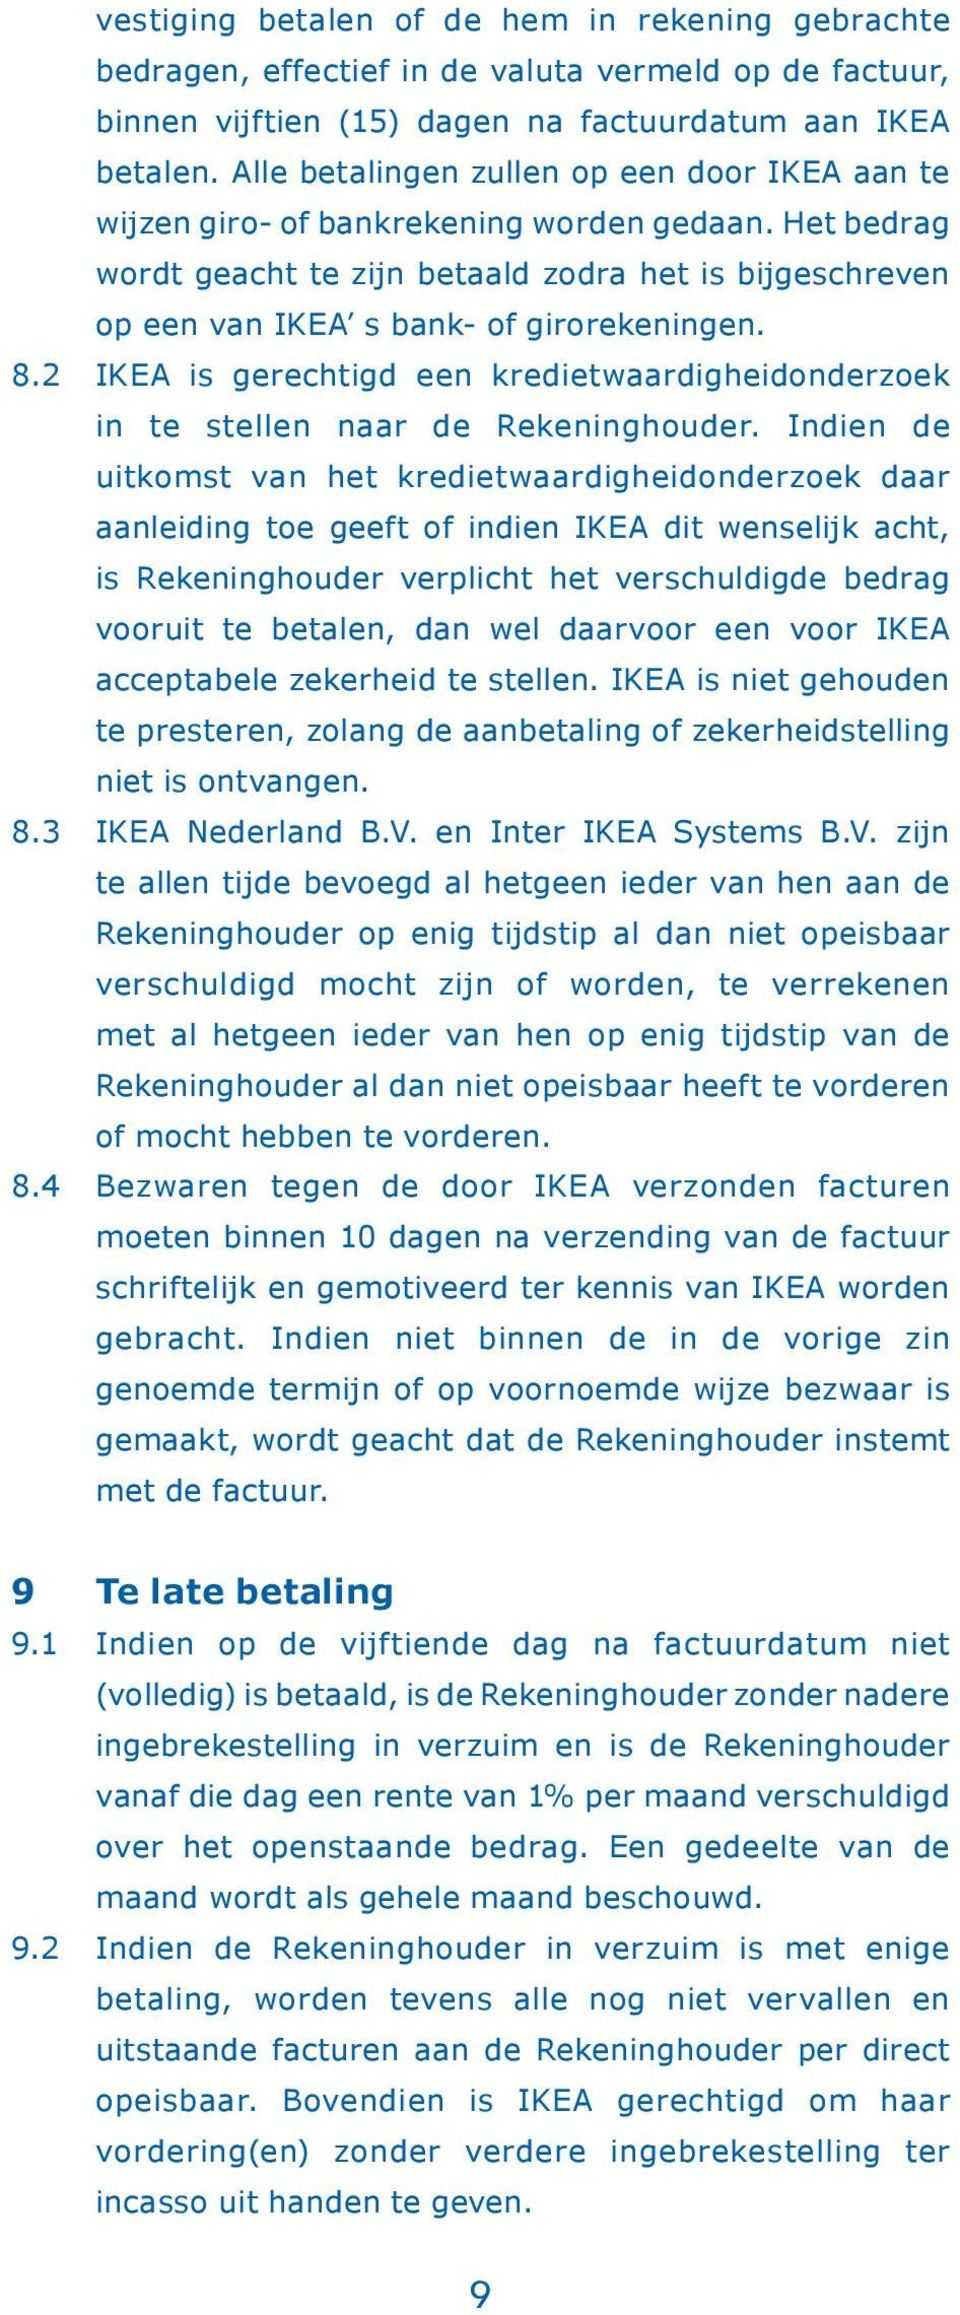 8.2 IKEA is gerechtigd een kredietwaardigheidonderzoek in te stellen naar de Rekeninghouder.